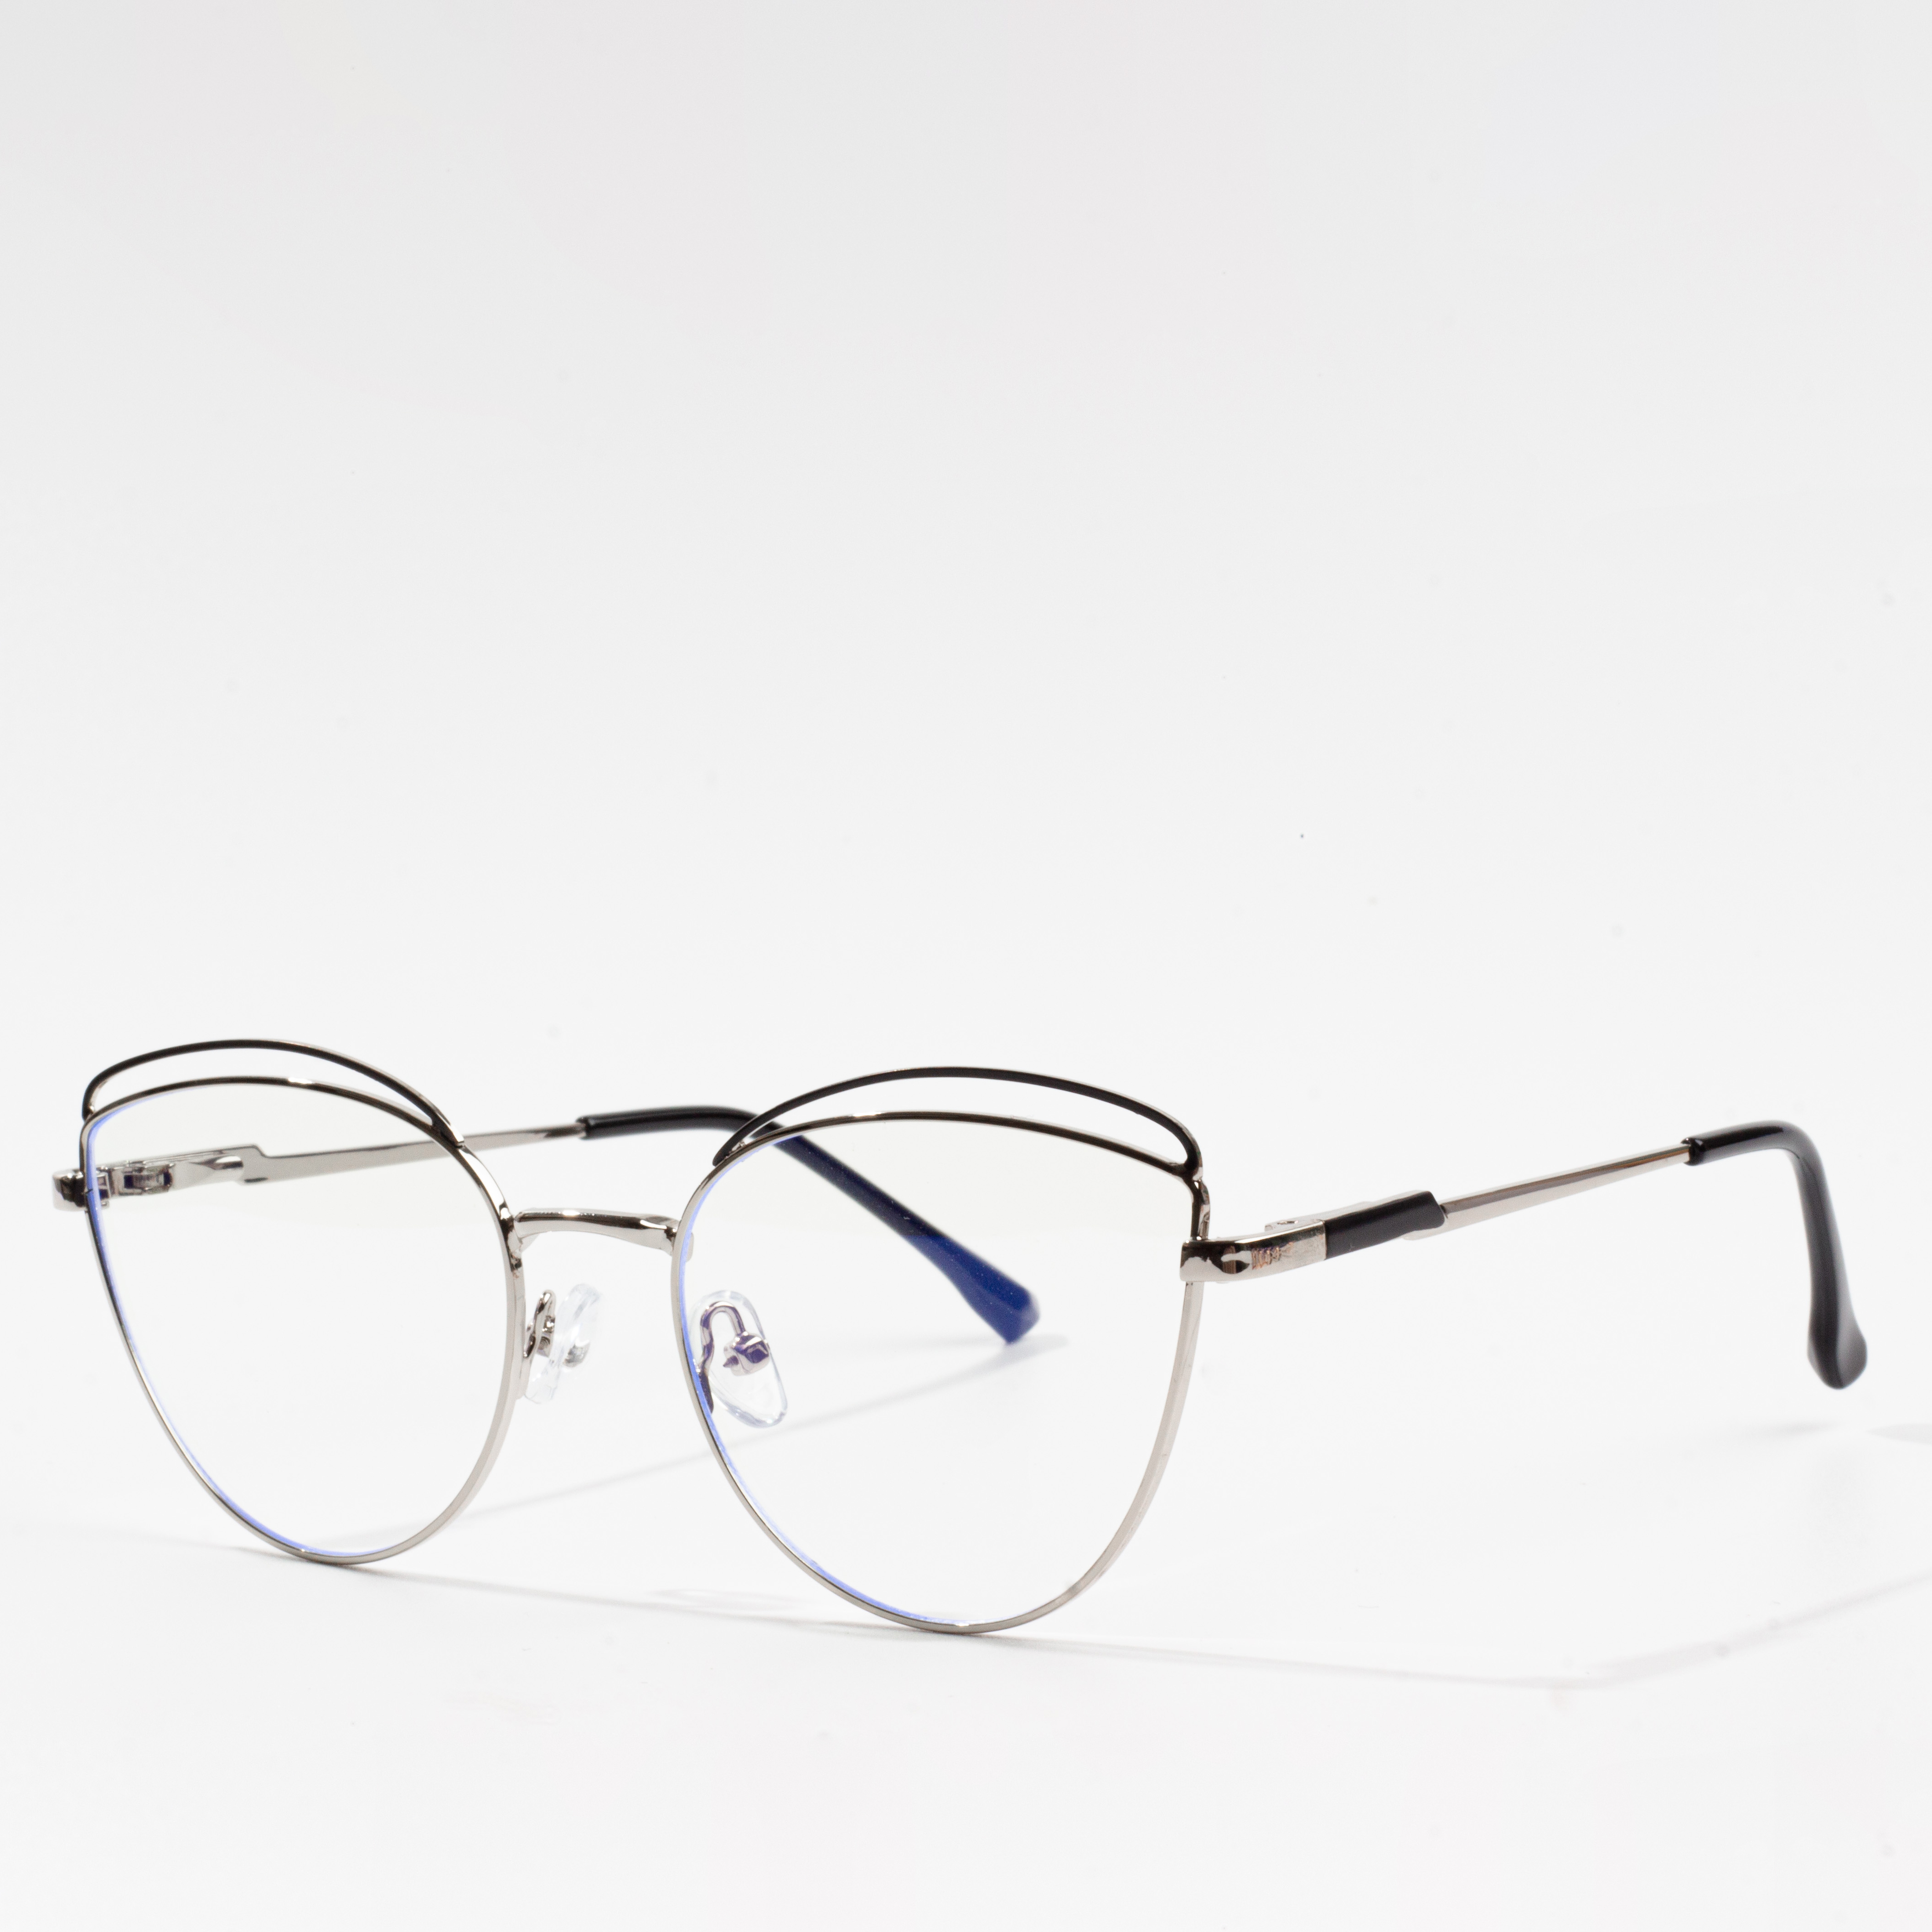 stylish eyeglass frames